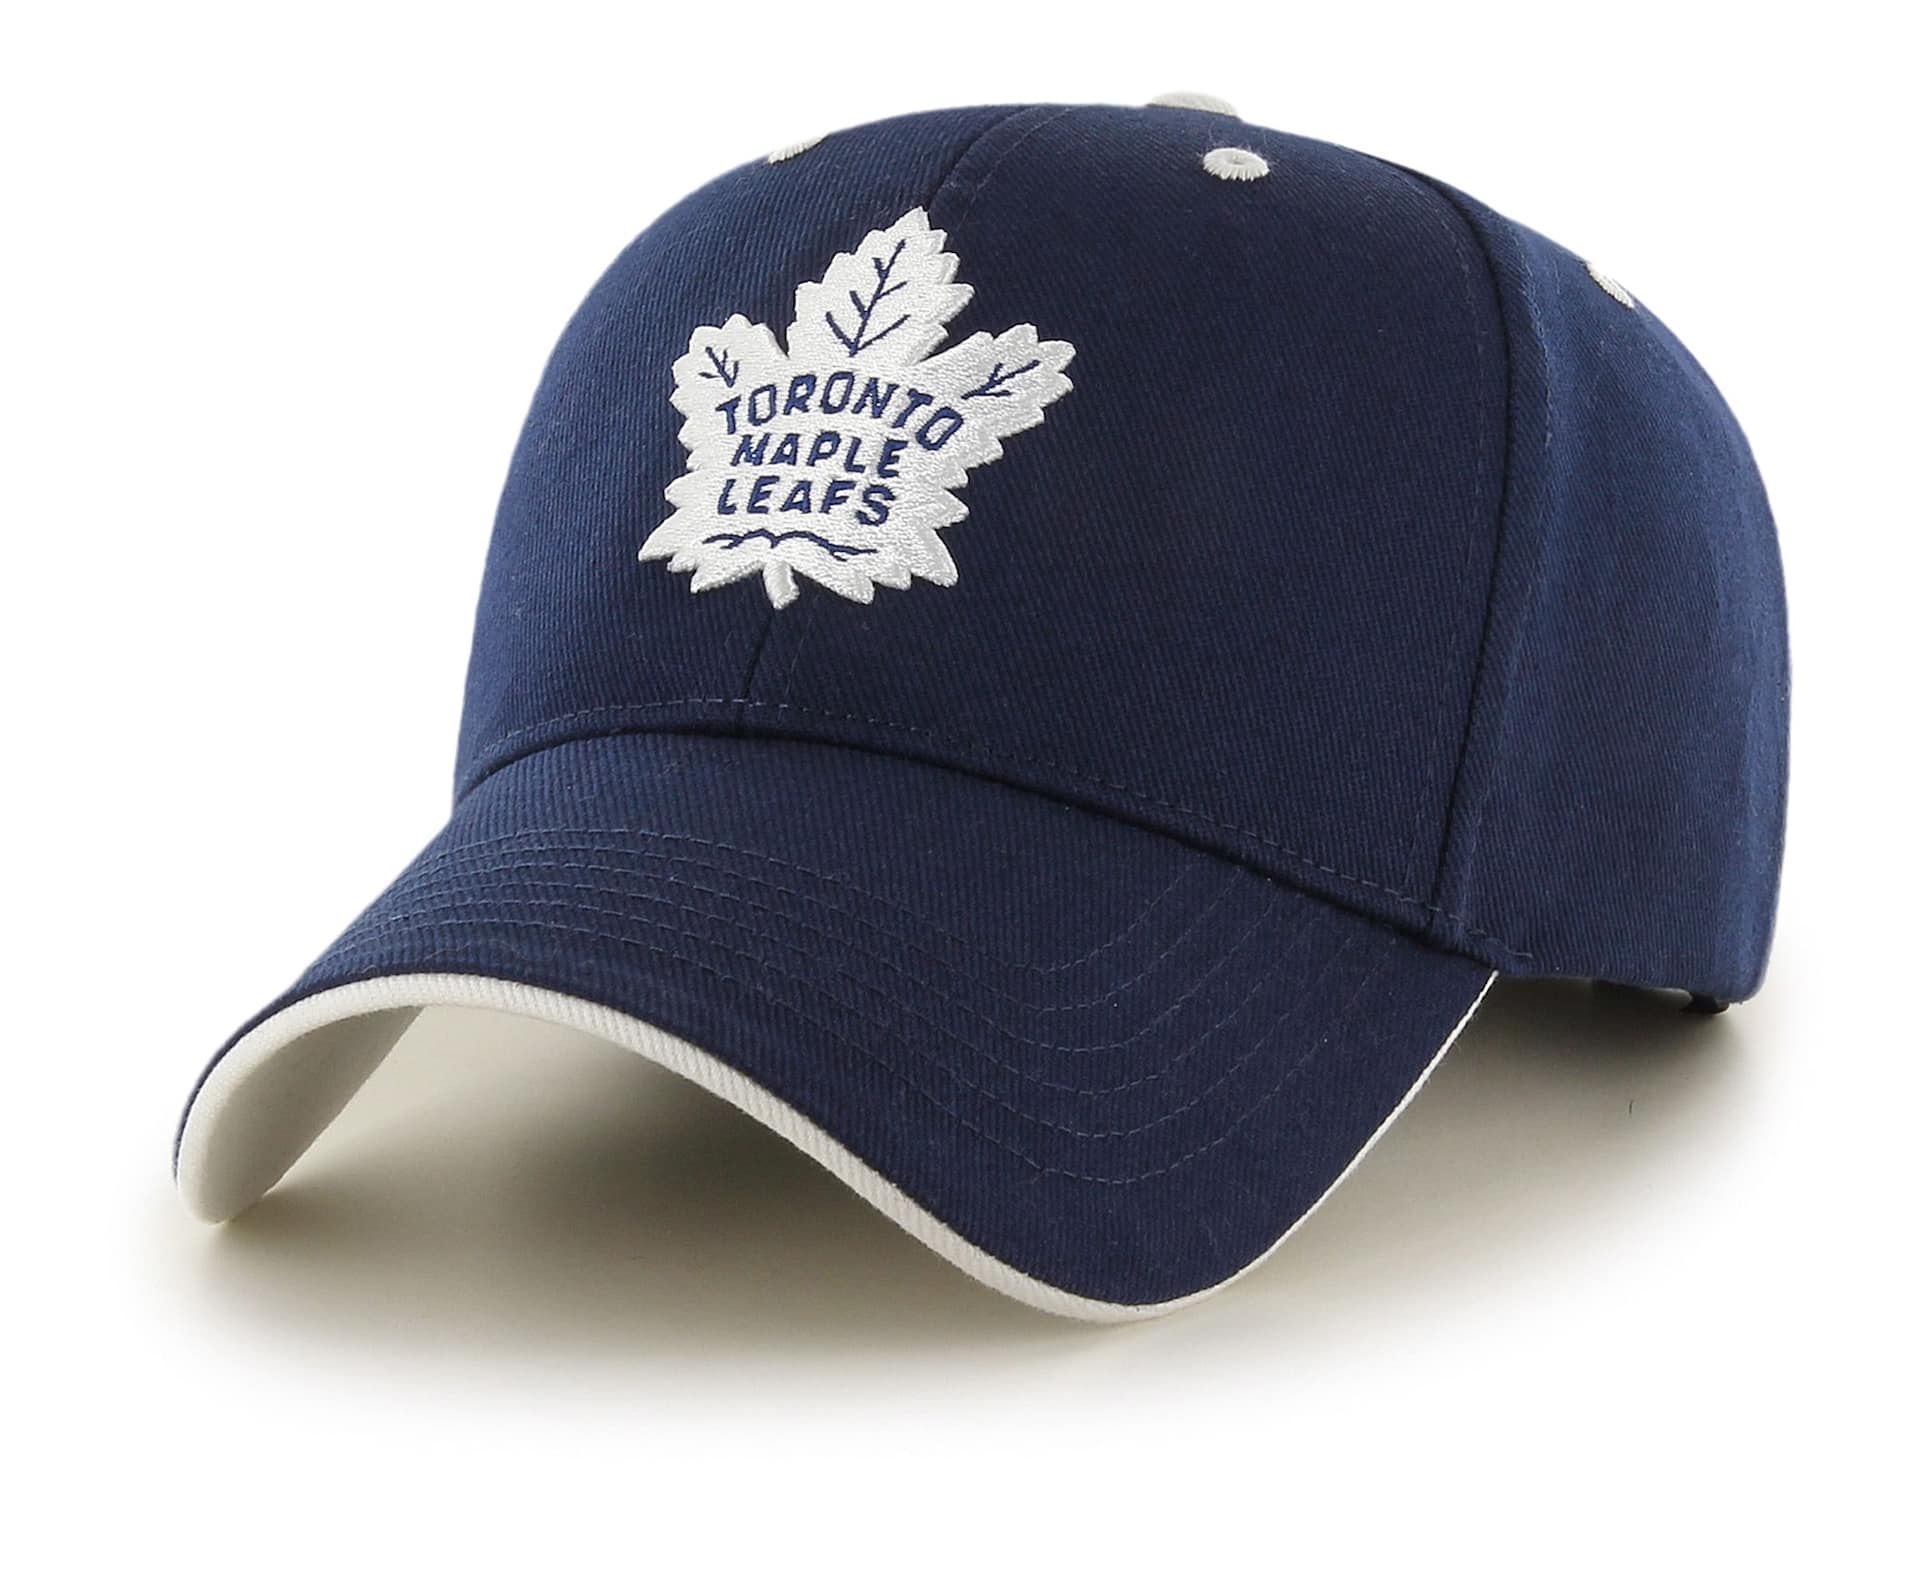 Fan Favourite NHL Toronto Maple Leafs Mass Money Maker Cap